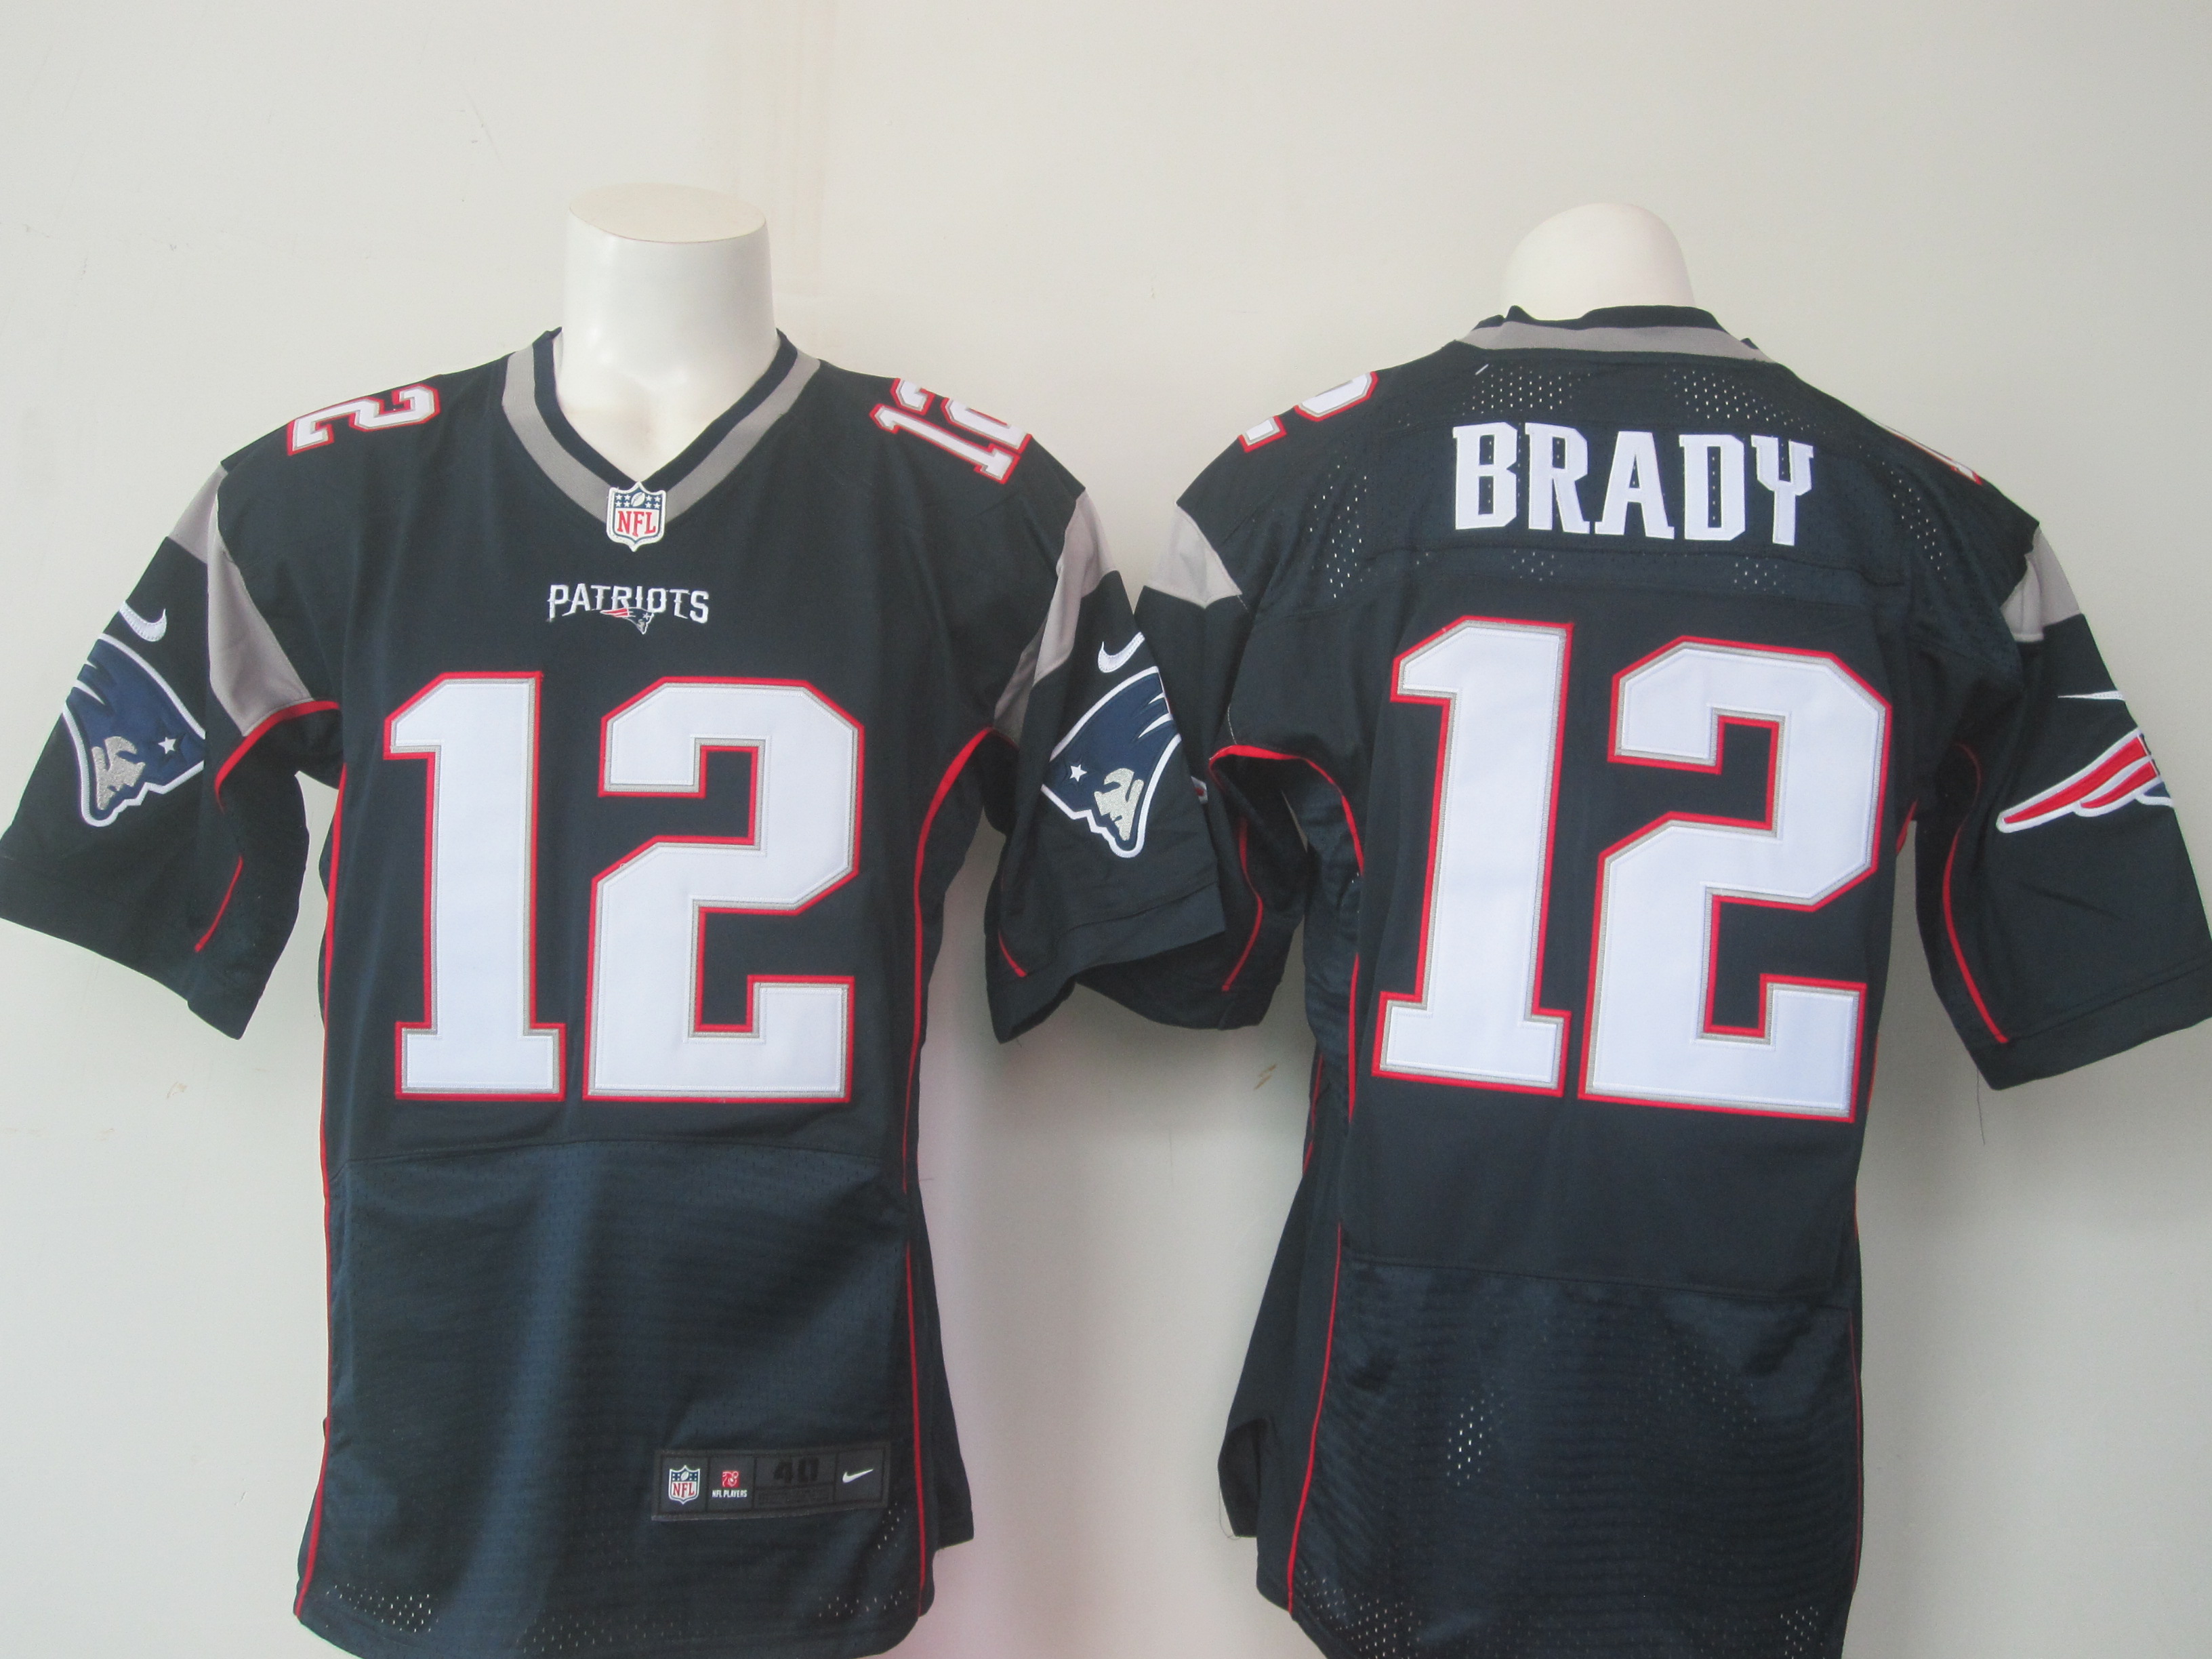 Nike Patriots 12 Tom Brady Blue With New Logo Elite Jersey